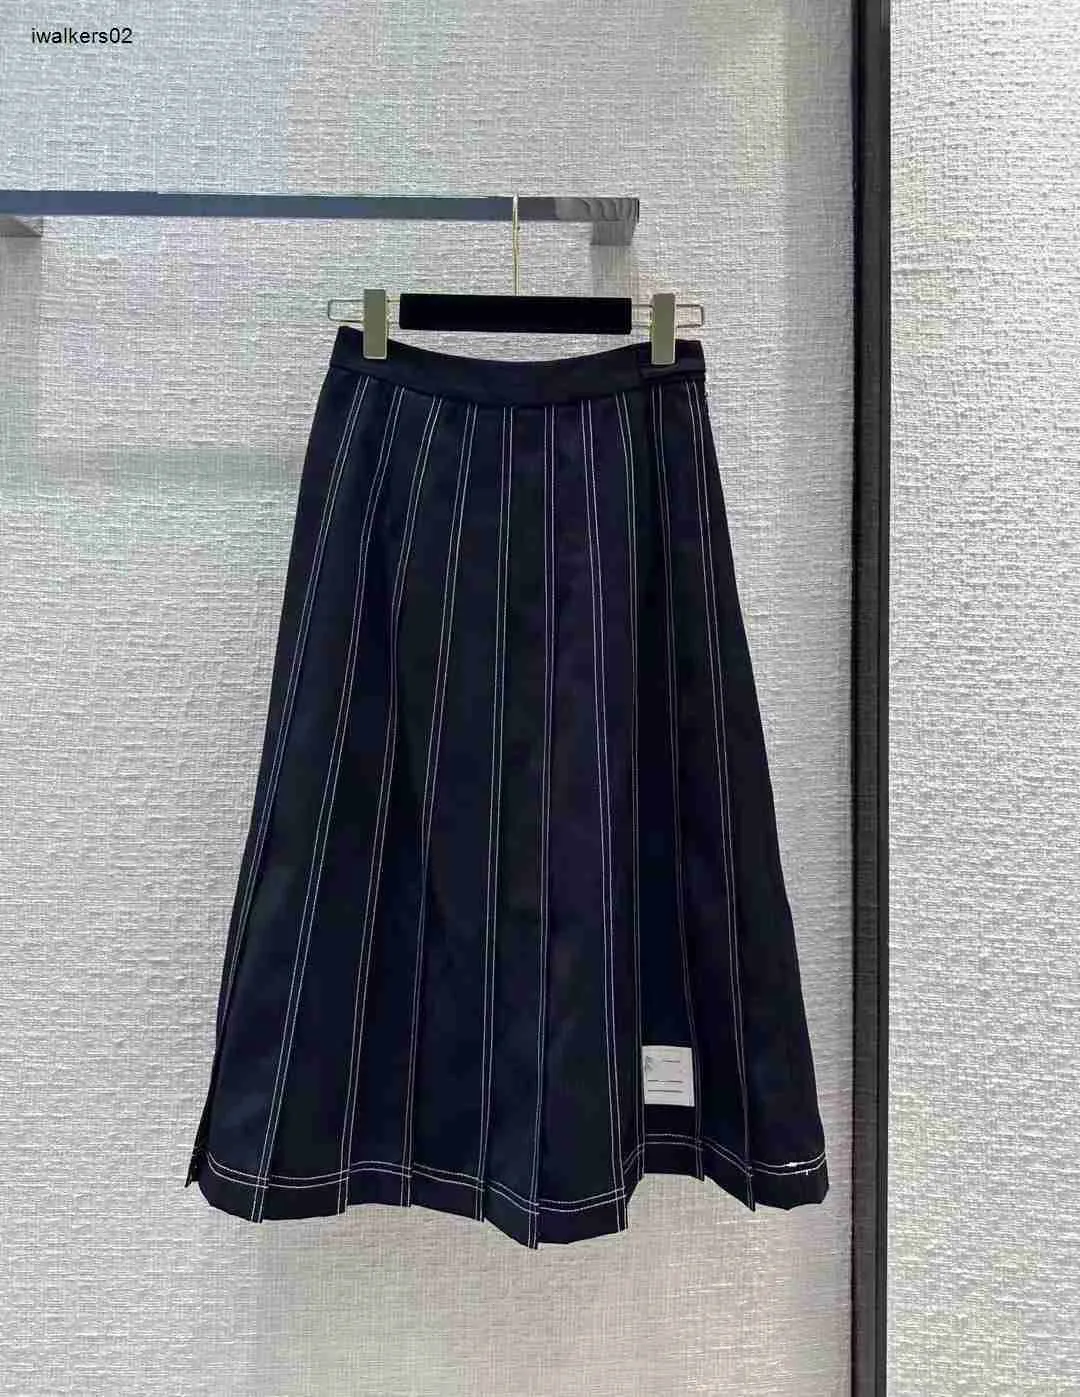 marka damska spódnica odzież dla kobiet letnia wysoka dekoracja paska i duża huśtawka długa dorskurt 22 grudnia gorąca